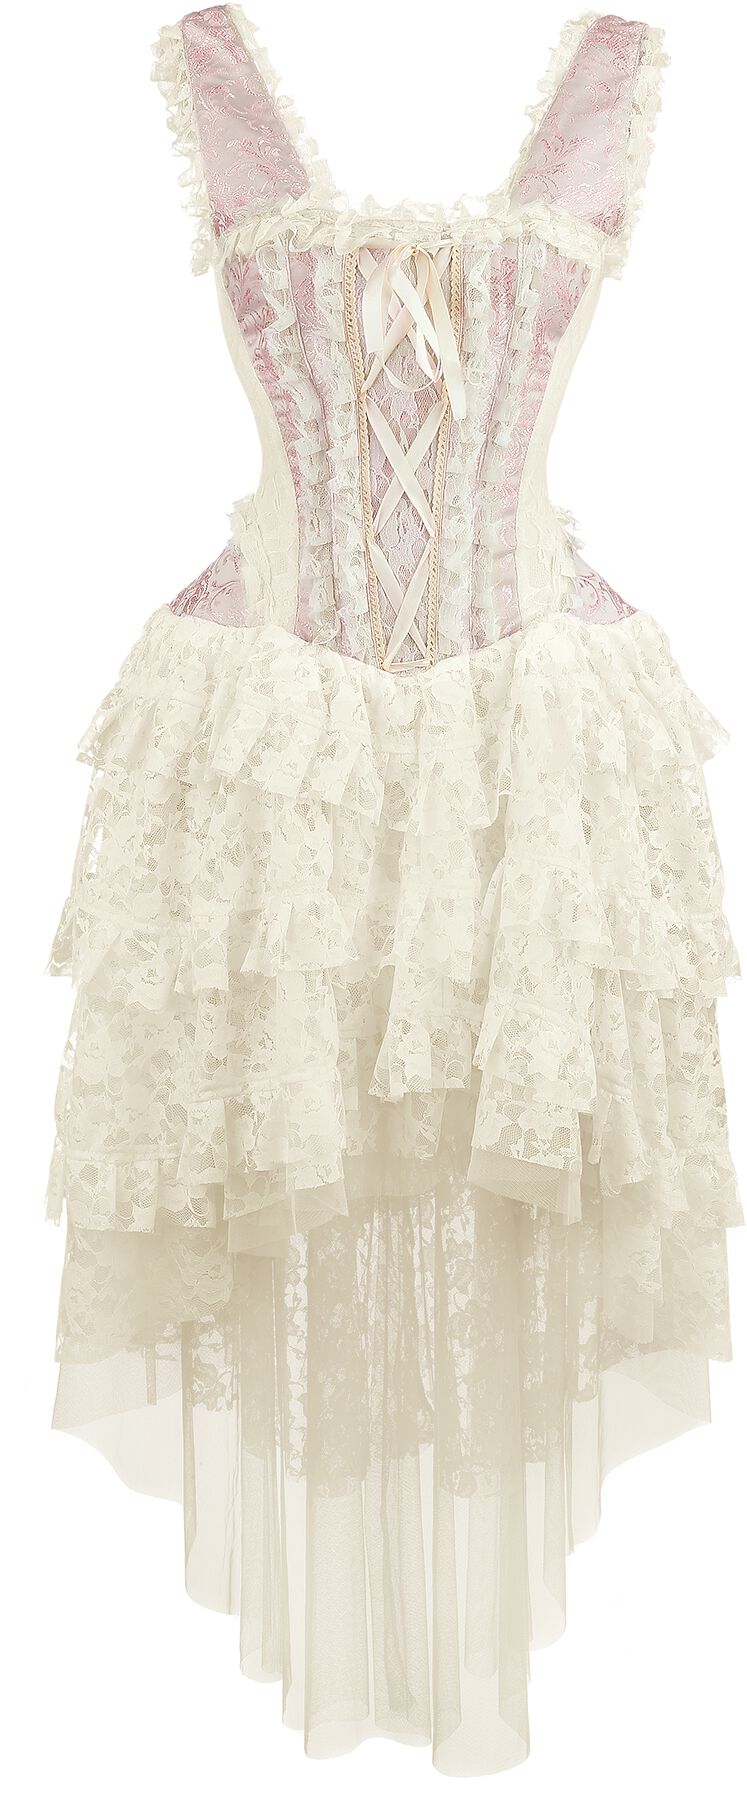 Burleska - Gothic Kleid lang - Ophelie Dress - S bis 3XL - für Damen - Größe M - rosa